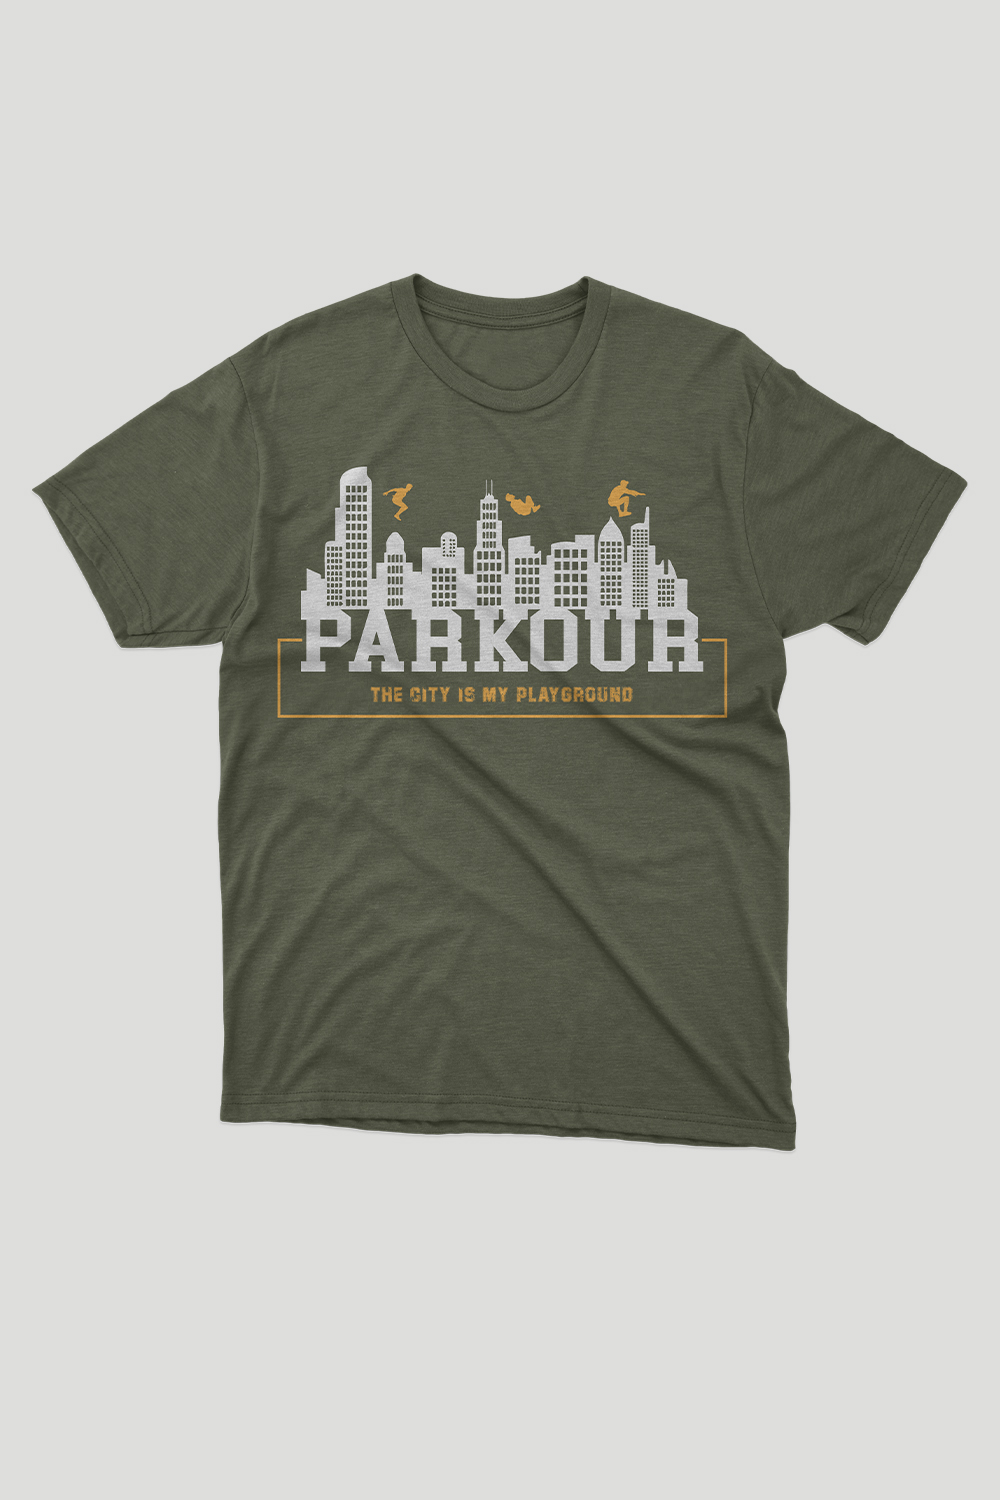 parkour T shirt Design4, parkour, parkour Design, T shirt , pinterest preview image.